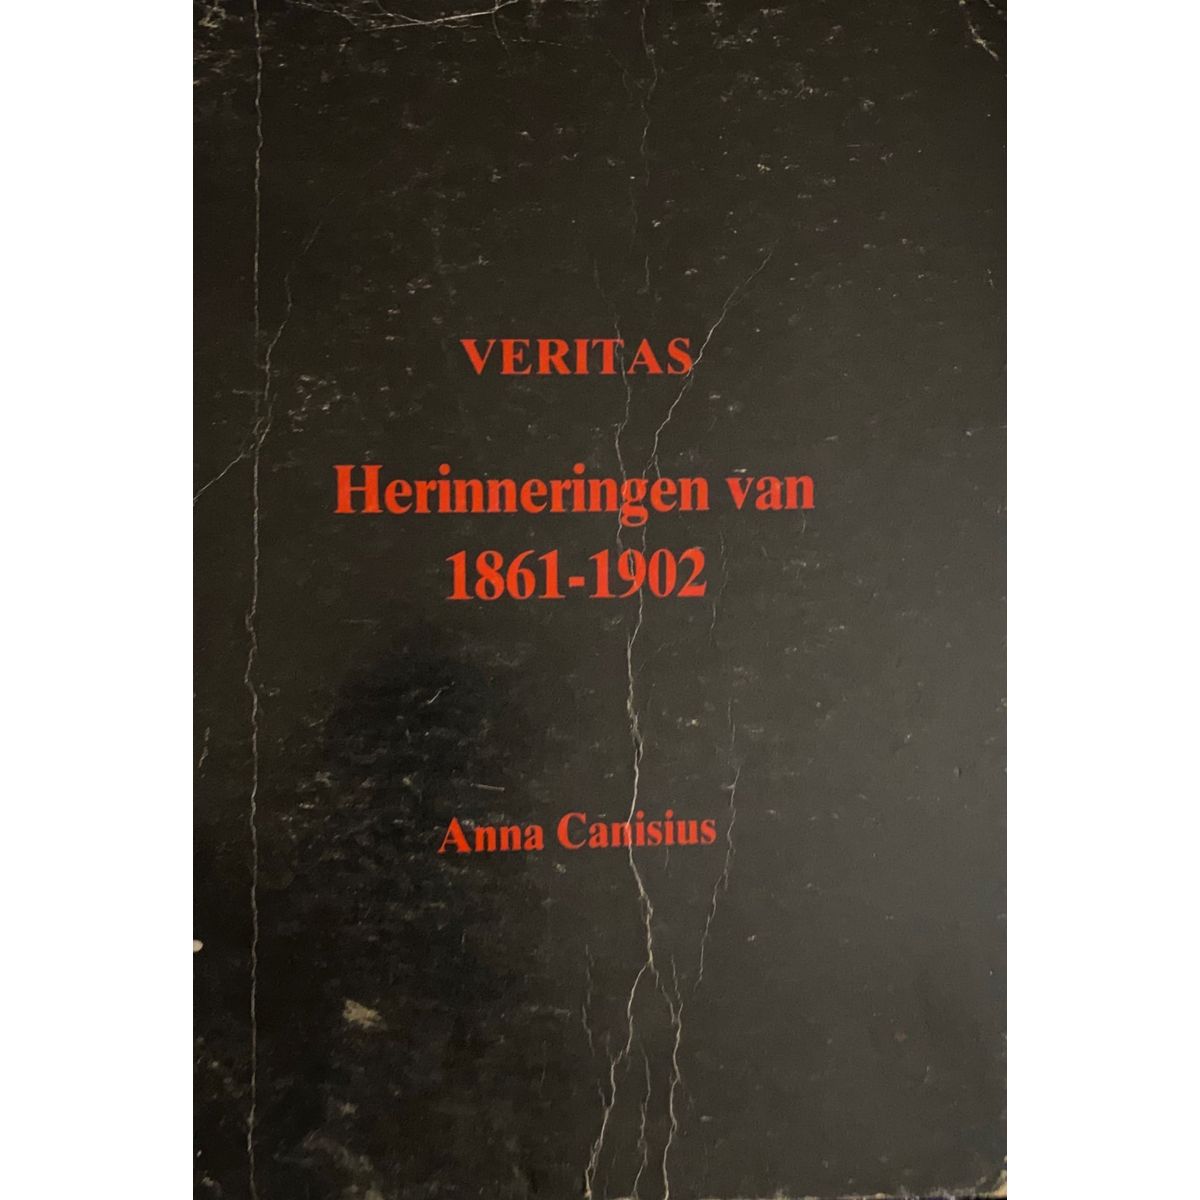 ISBN: 9780620095419 / 0620095415 - Veritas Herinneringen van 1861-1902 by Anna Canisius [1986]